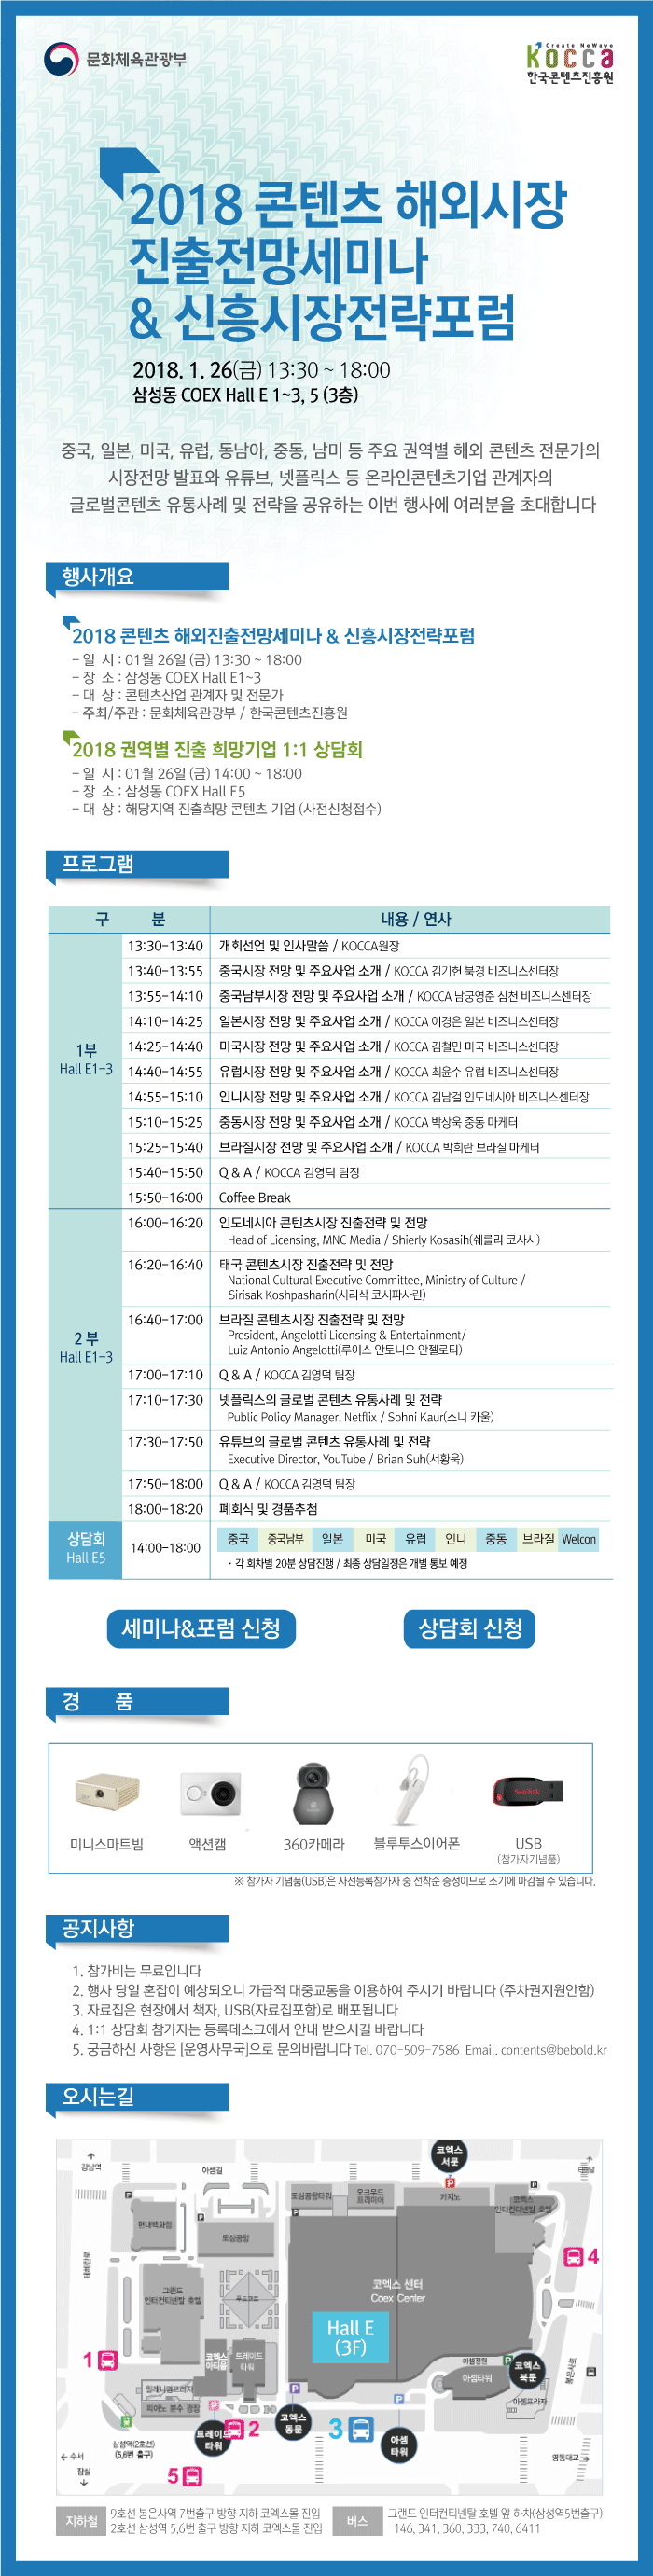 2018 콘텐츠 해외진출전망세미나 & 신흥시장전략포럼 개최 2018.1.26(금) 13:30~18:00 삼성동 COEX Hall E 1~3, 5(3층) 